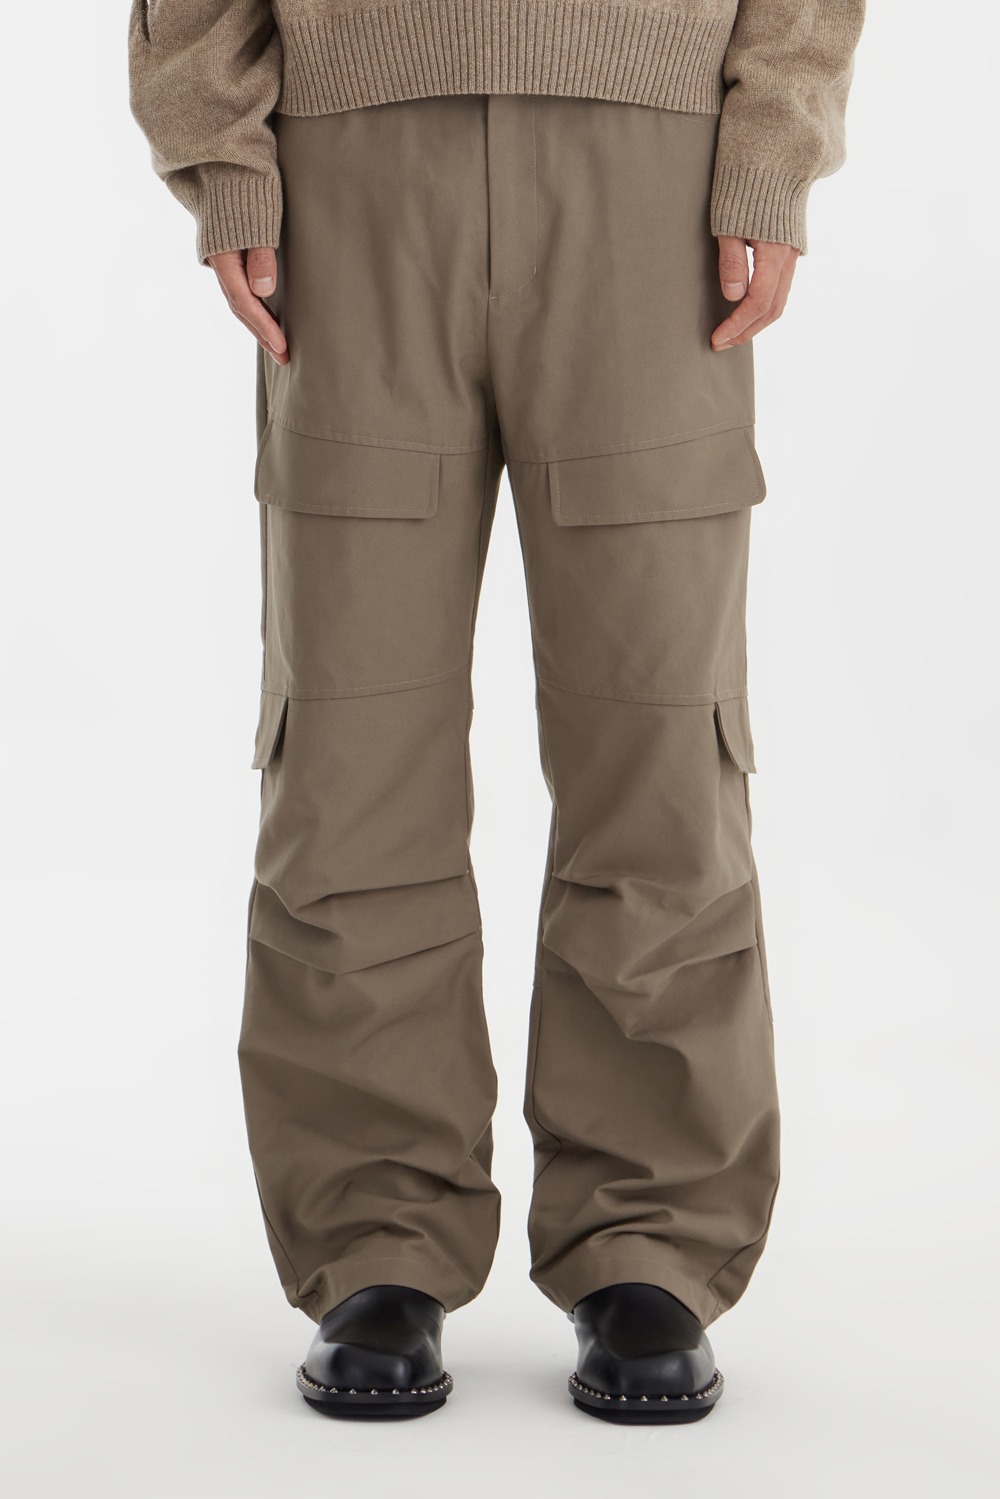 Multi Pocket Pants - Almond Brown